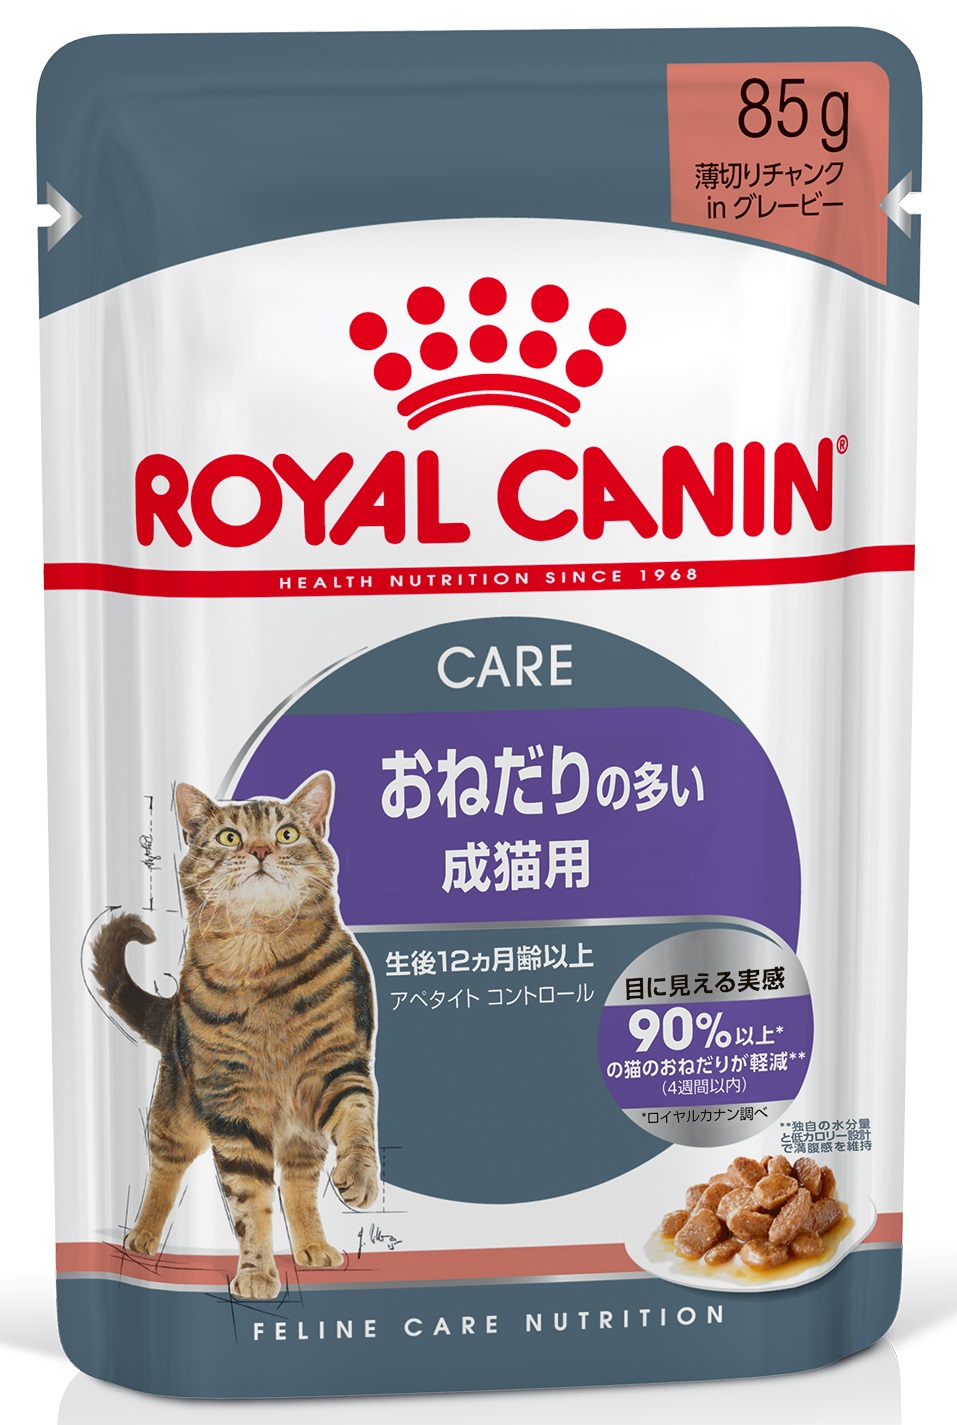 【ロイヤルカナン】アペタイトコントロール(おねだりの多い成猫用) ウェット